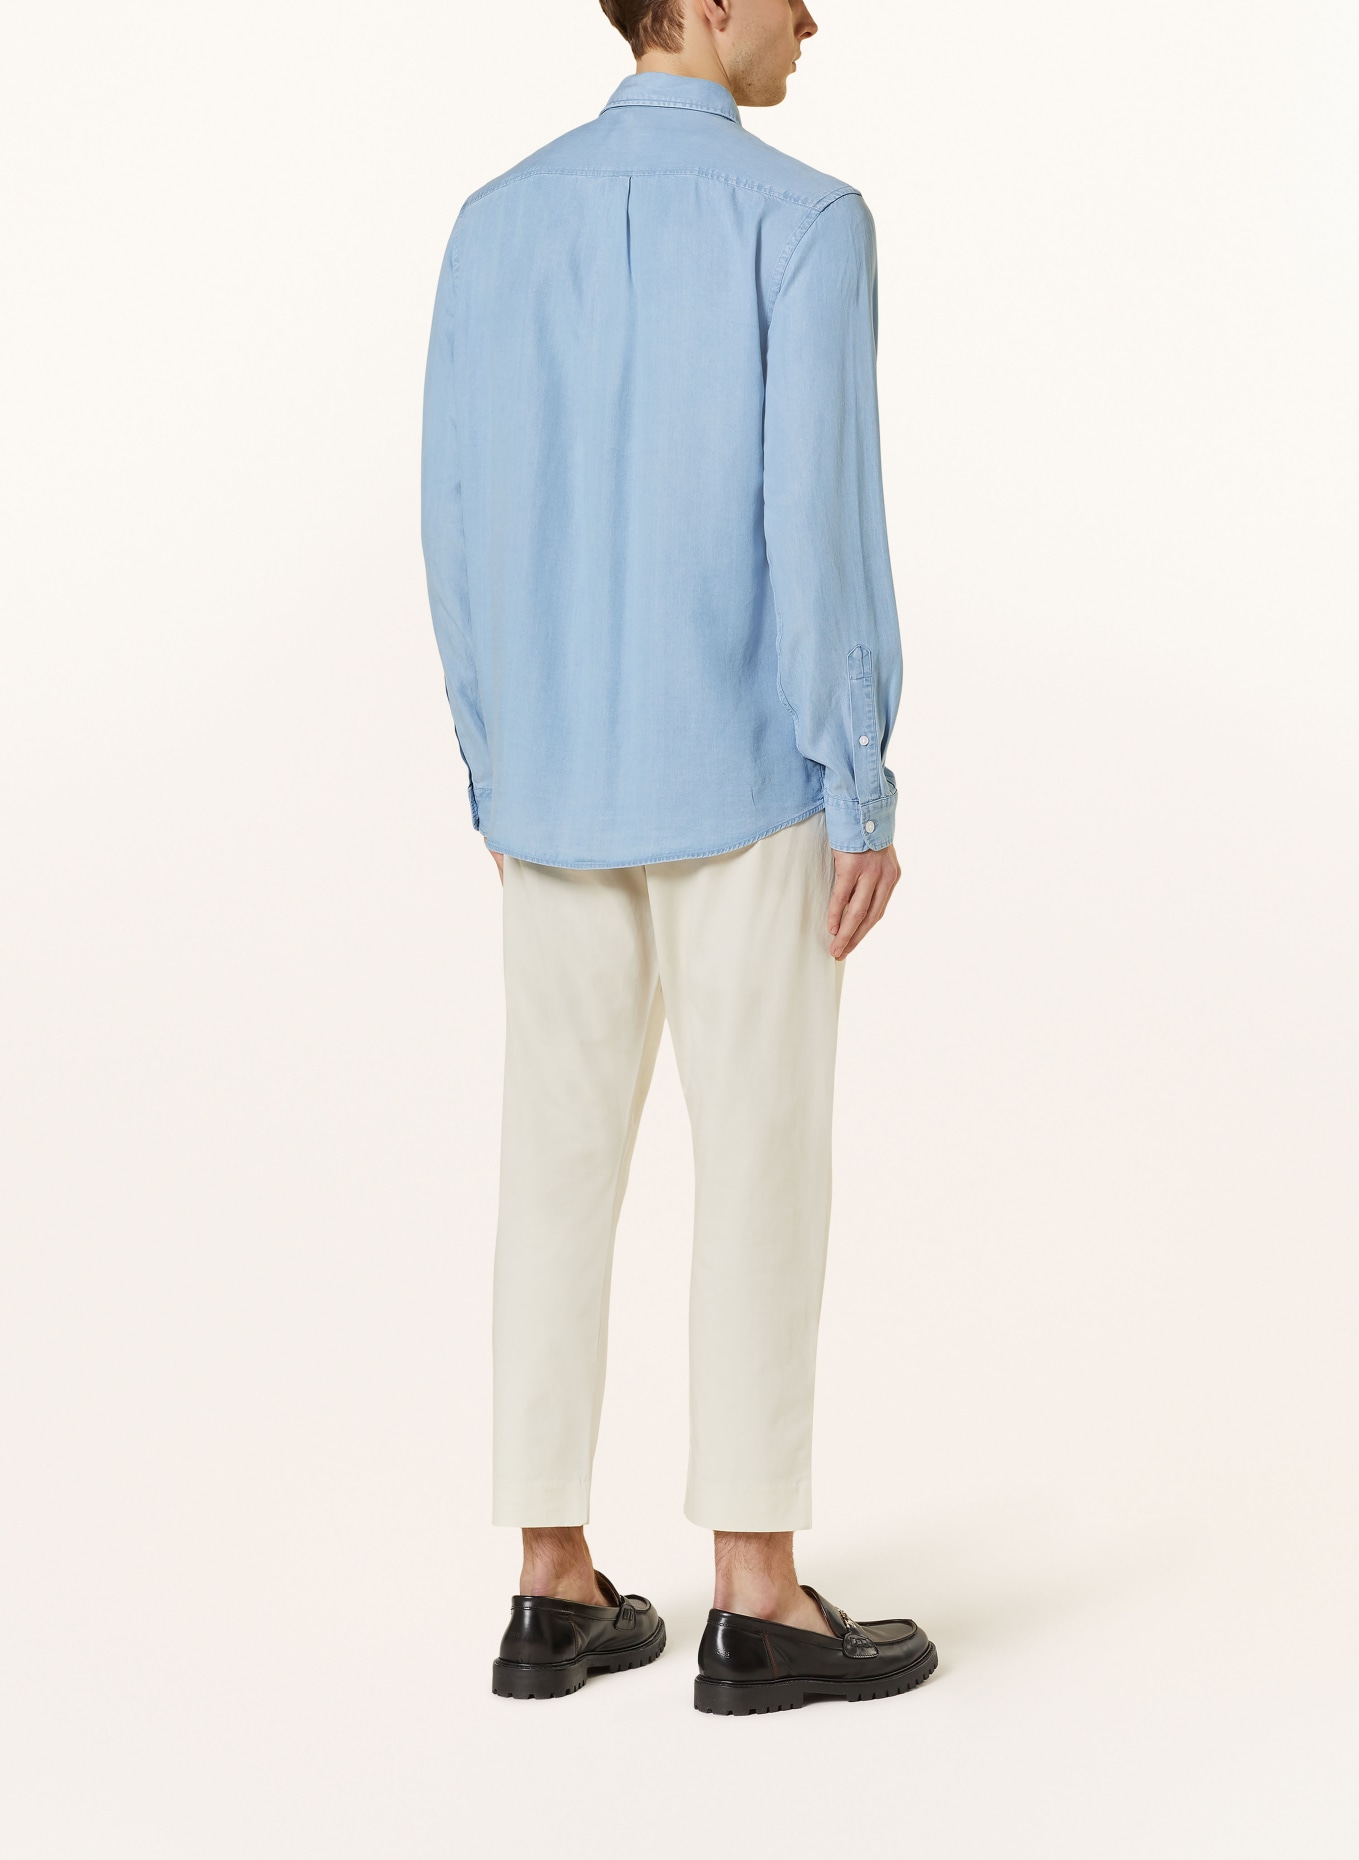 PAUL Shirt comfort fit, Color: 78705 light denim (Image 3)